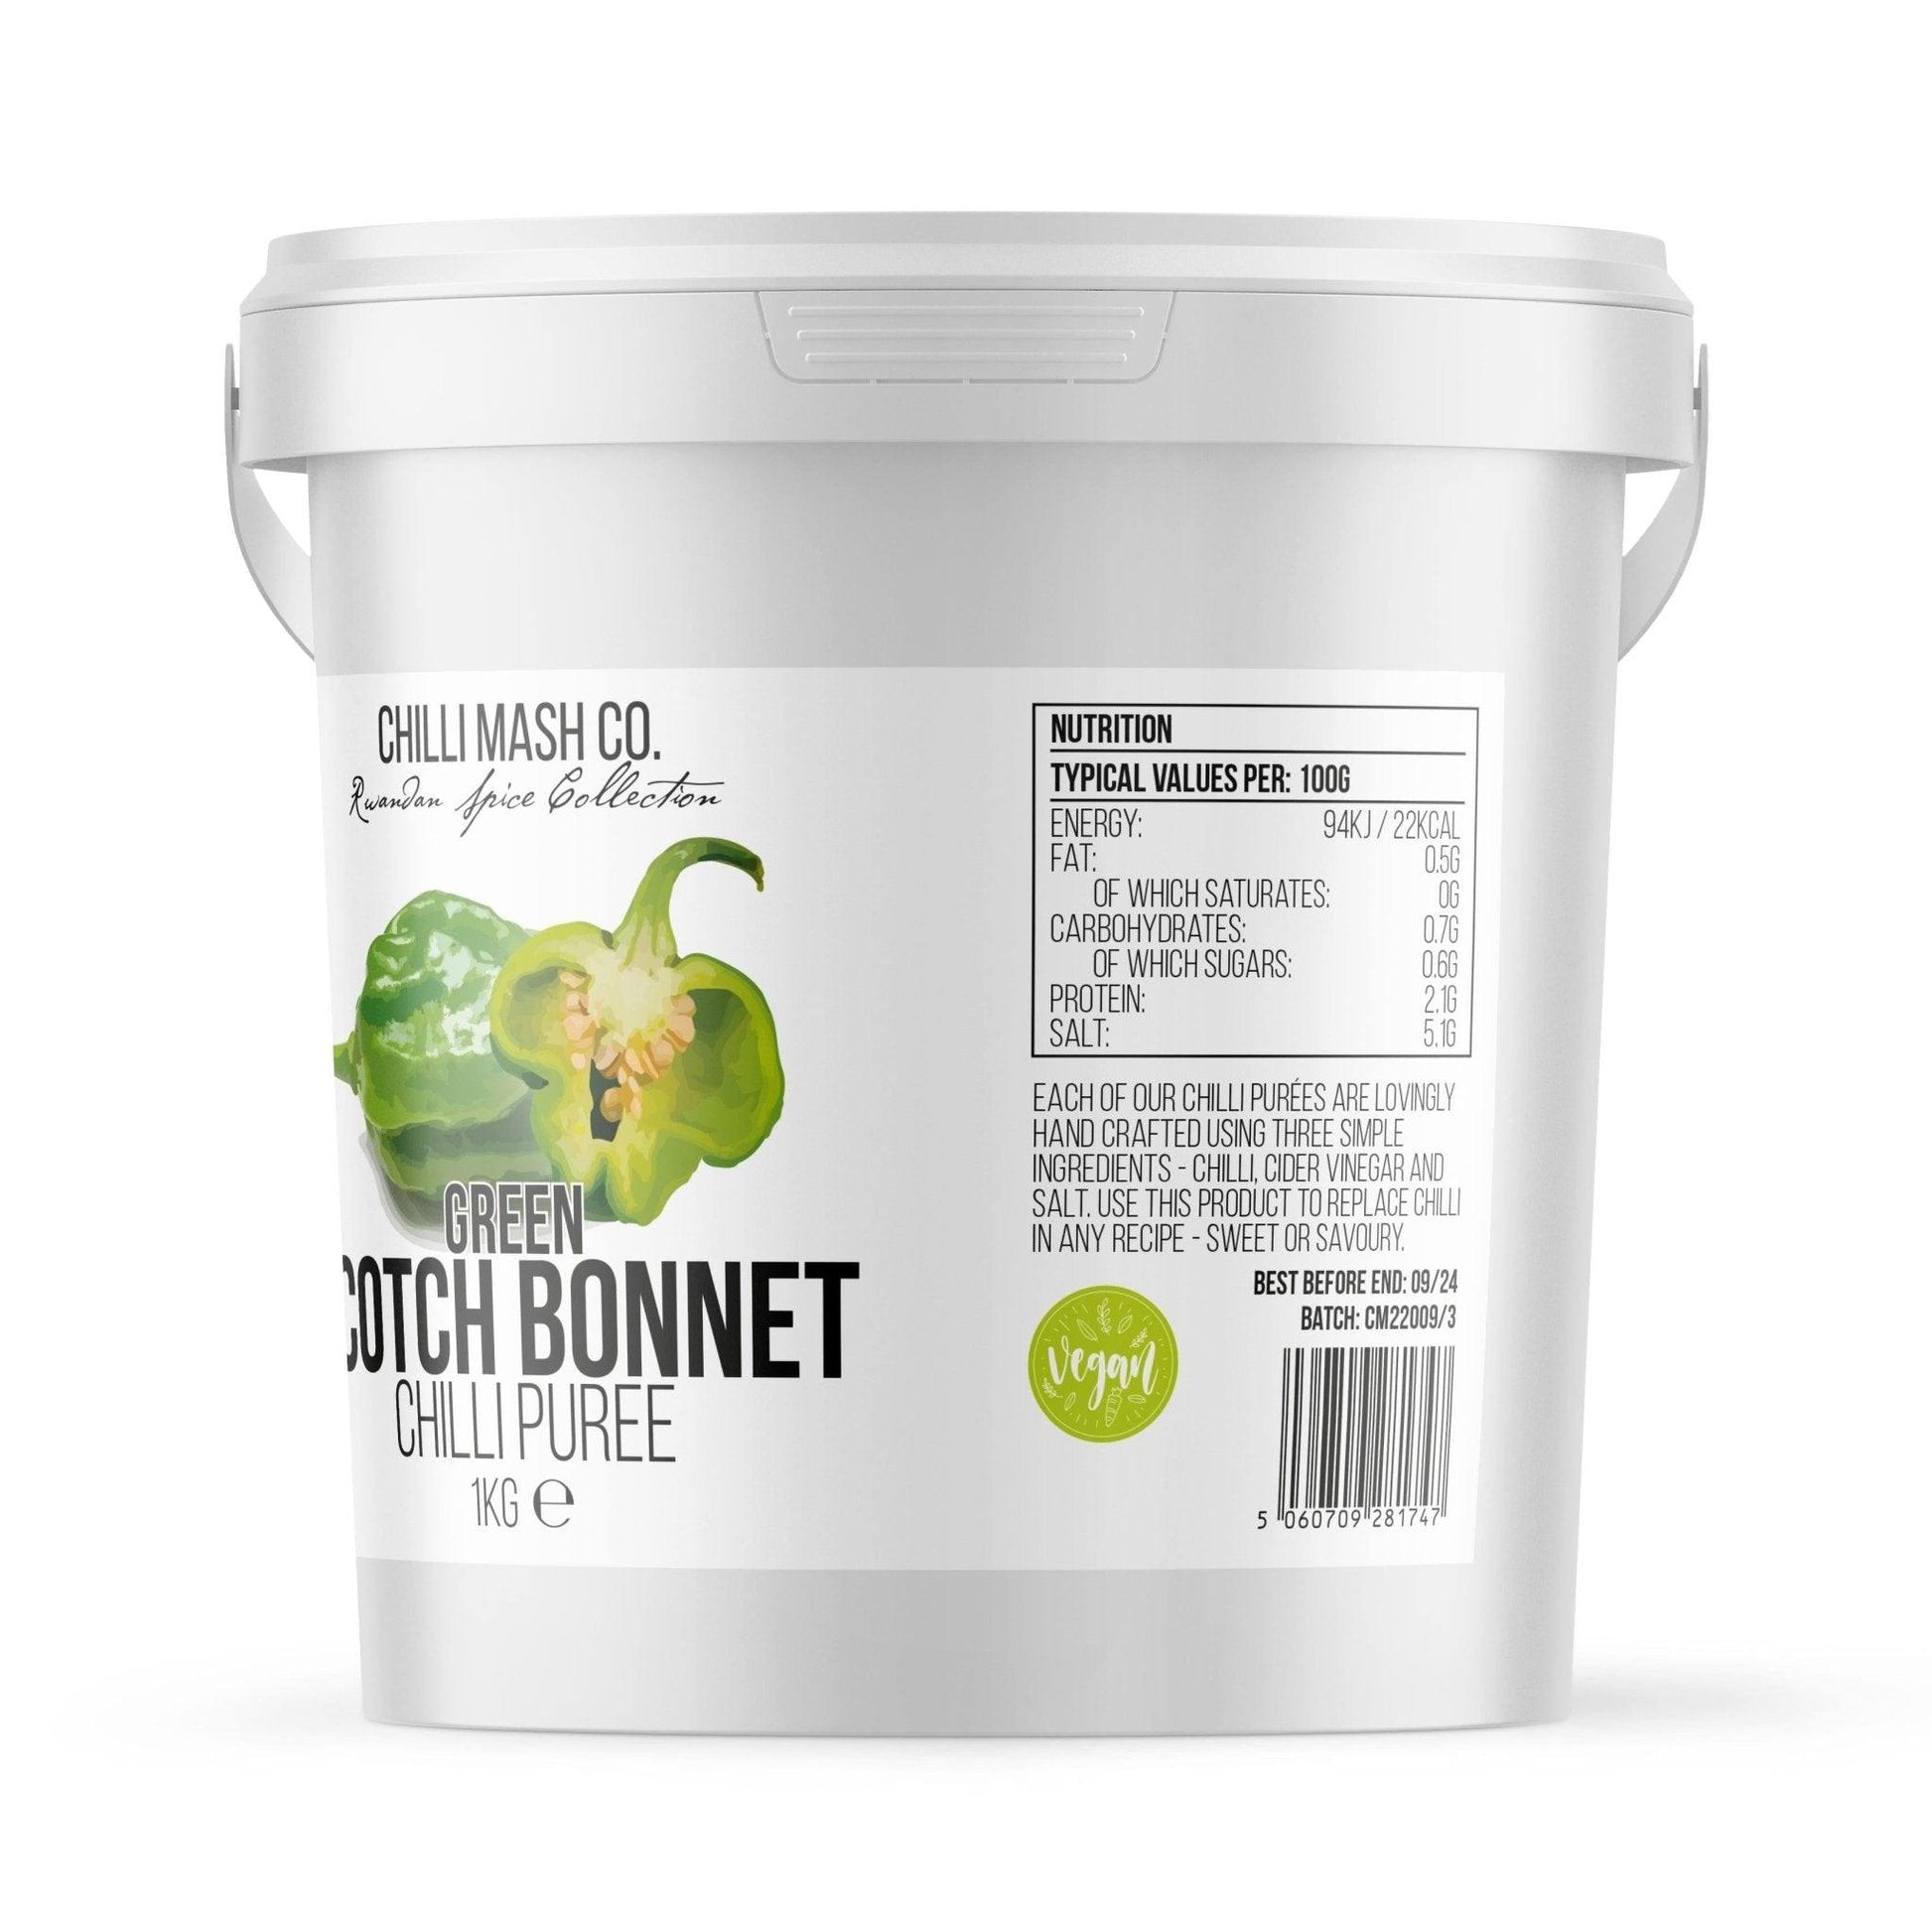 Green Scotch Bonnet Chilli Puree | 1kg | Chilli Mash Company - One Stop Chilli Shop